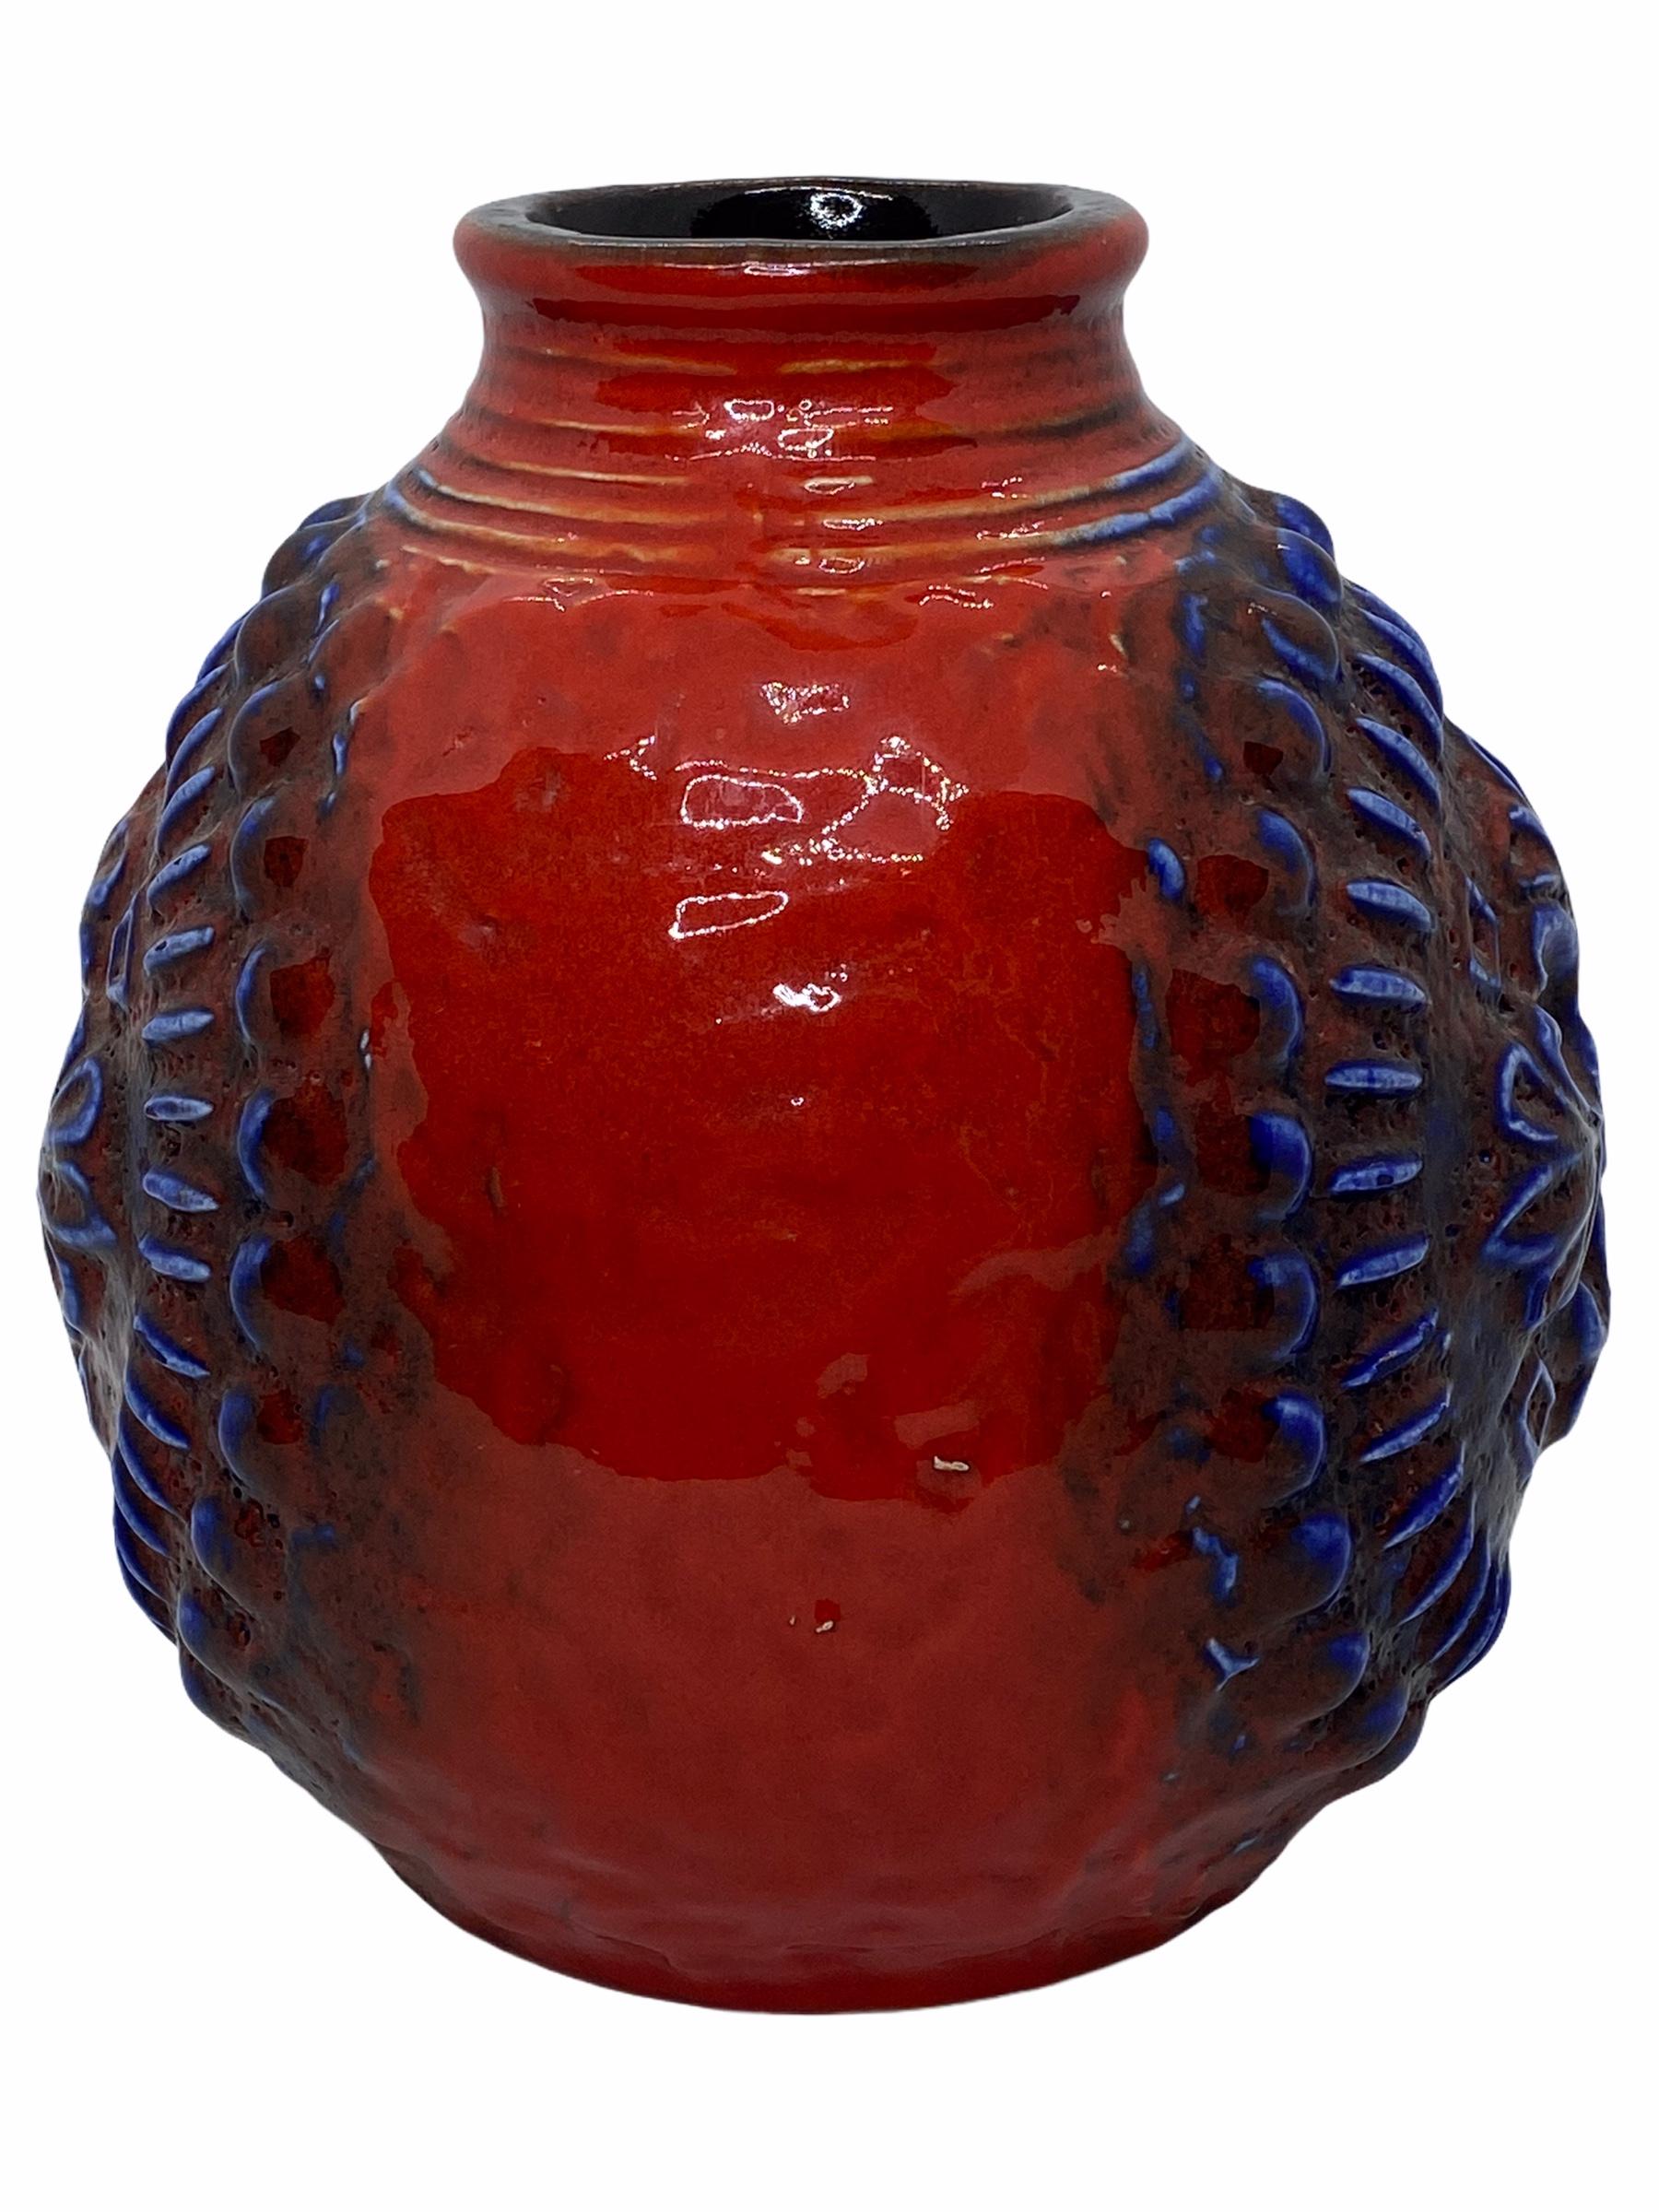 Un étonnant vase en poterie d'art du milieu du siècle dernier, fabriqué en Allemagne, vers les années 1970. Le vase est en très bon état, sans éclats, ni fissures, ni morsures de puces. Signé avec la marque du fabricant.